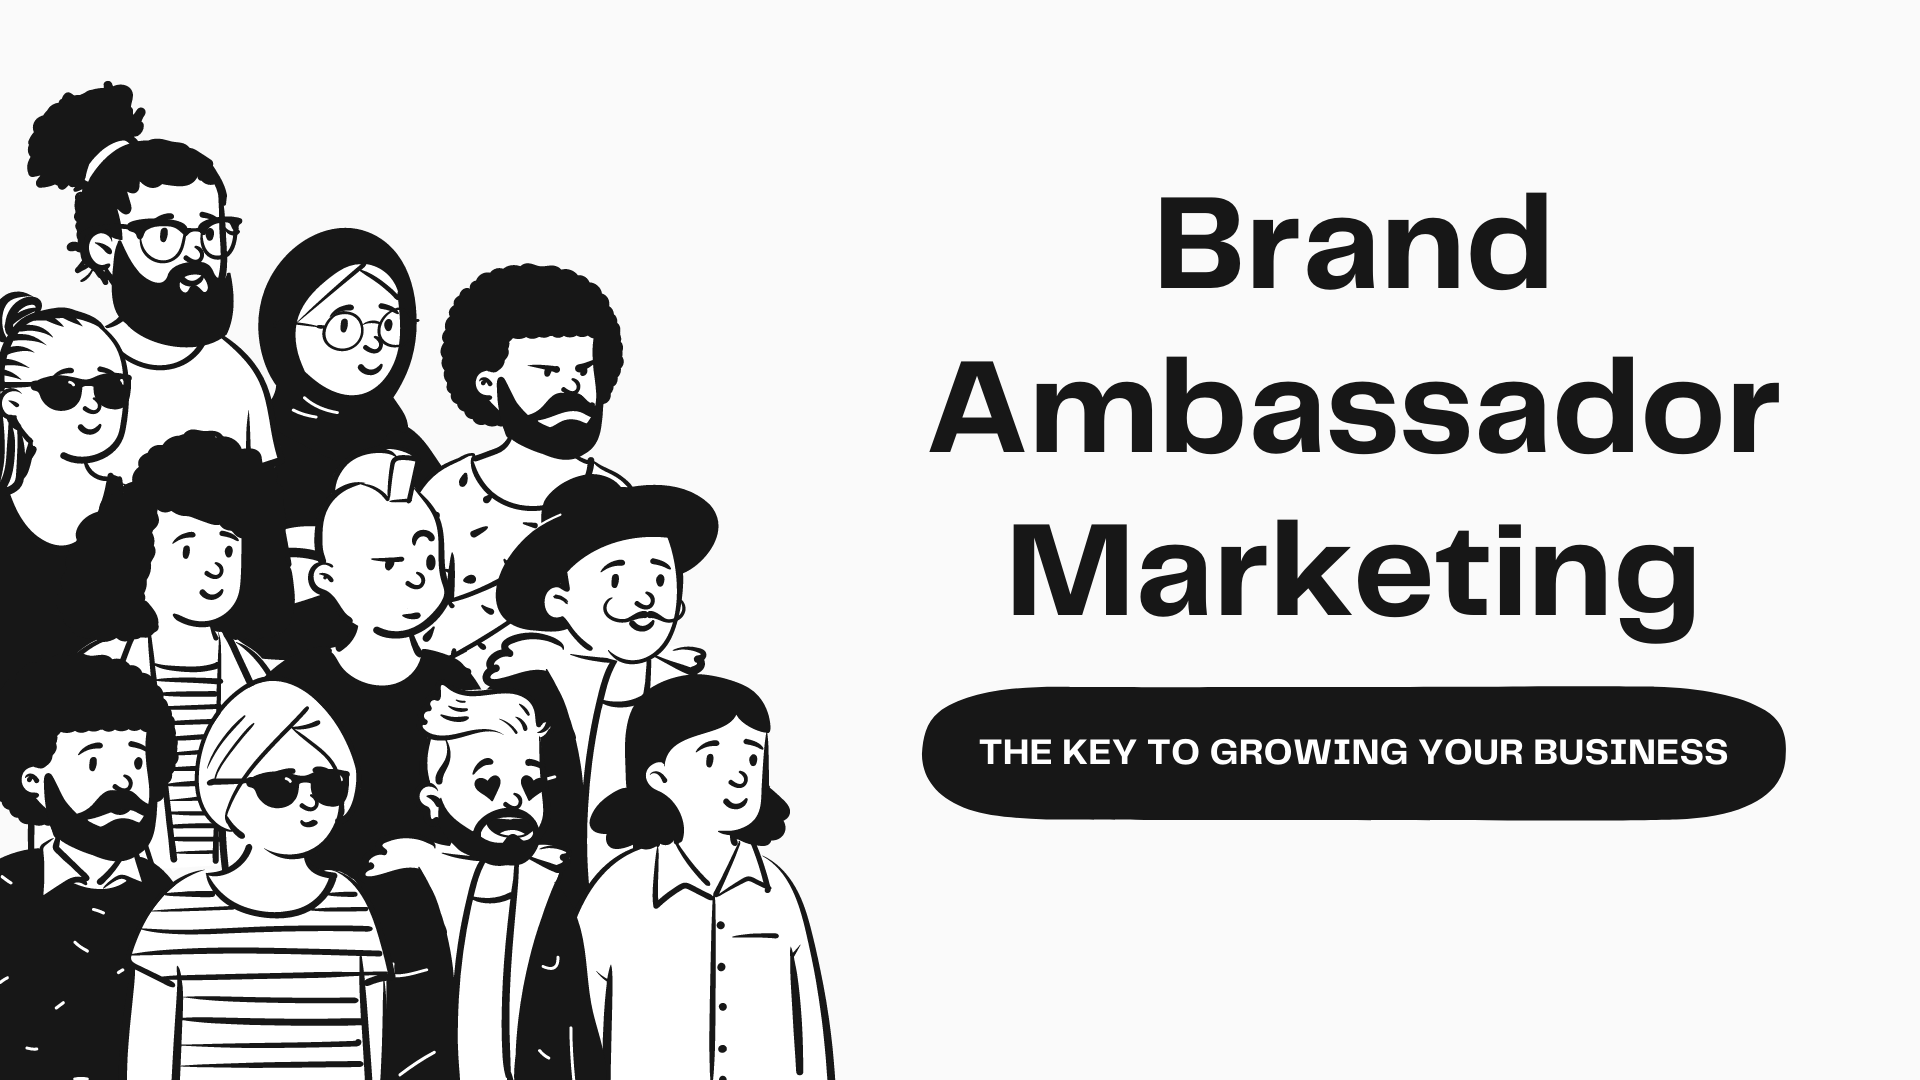 Brand Ambassador Marketing